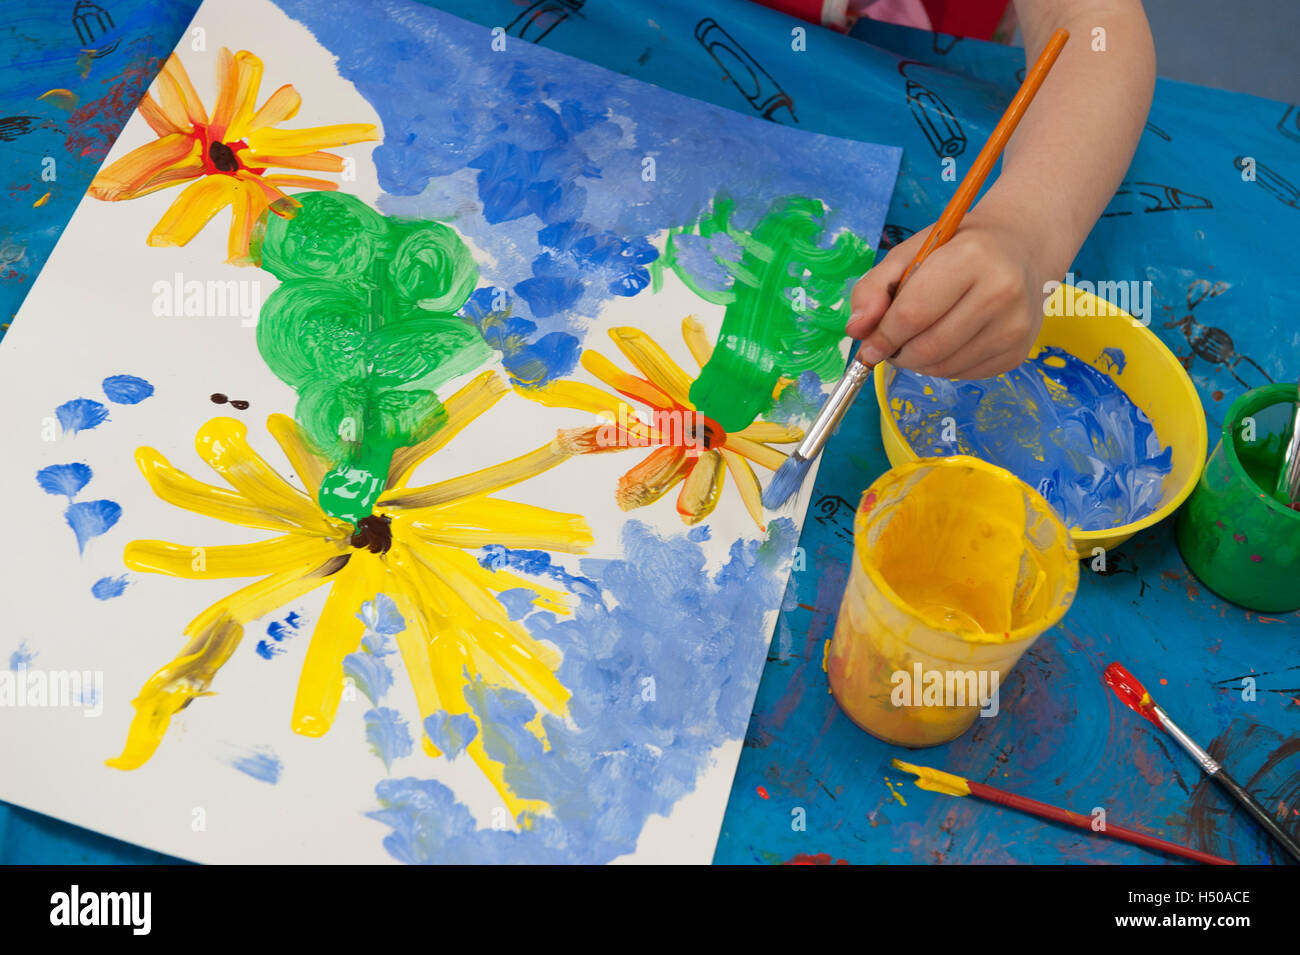 Pinturas para niños fotografías e imágenes de alta resolución - Alamy